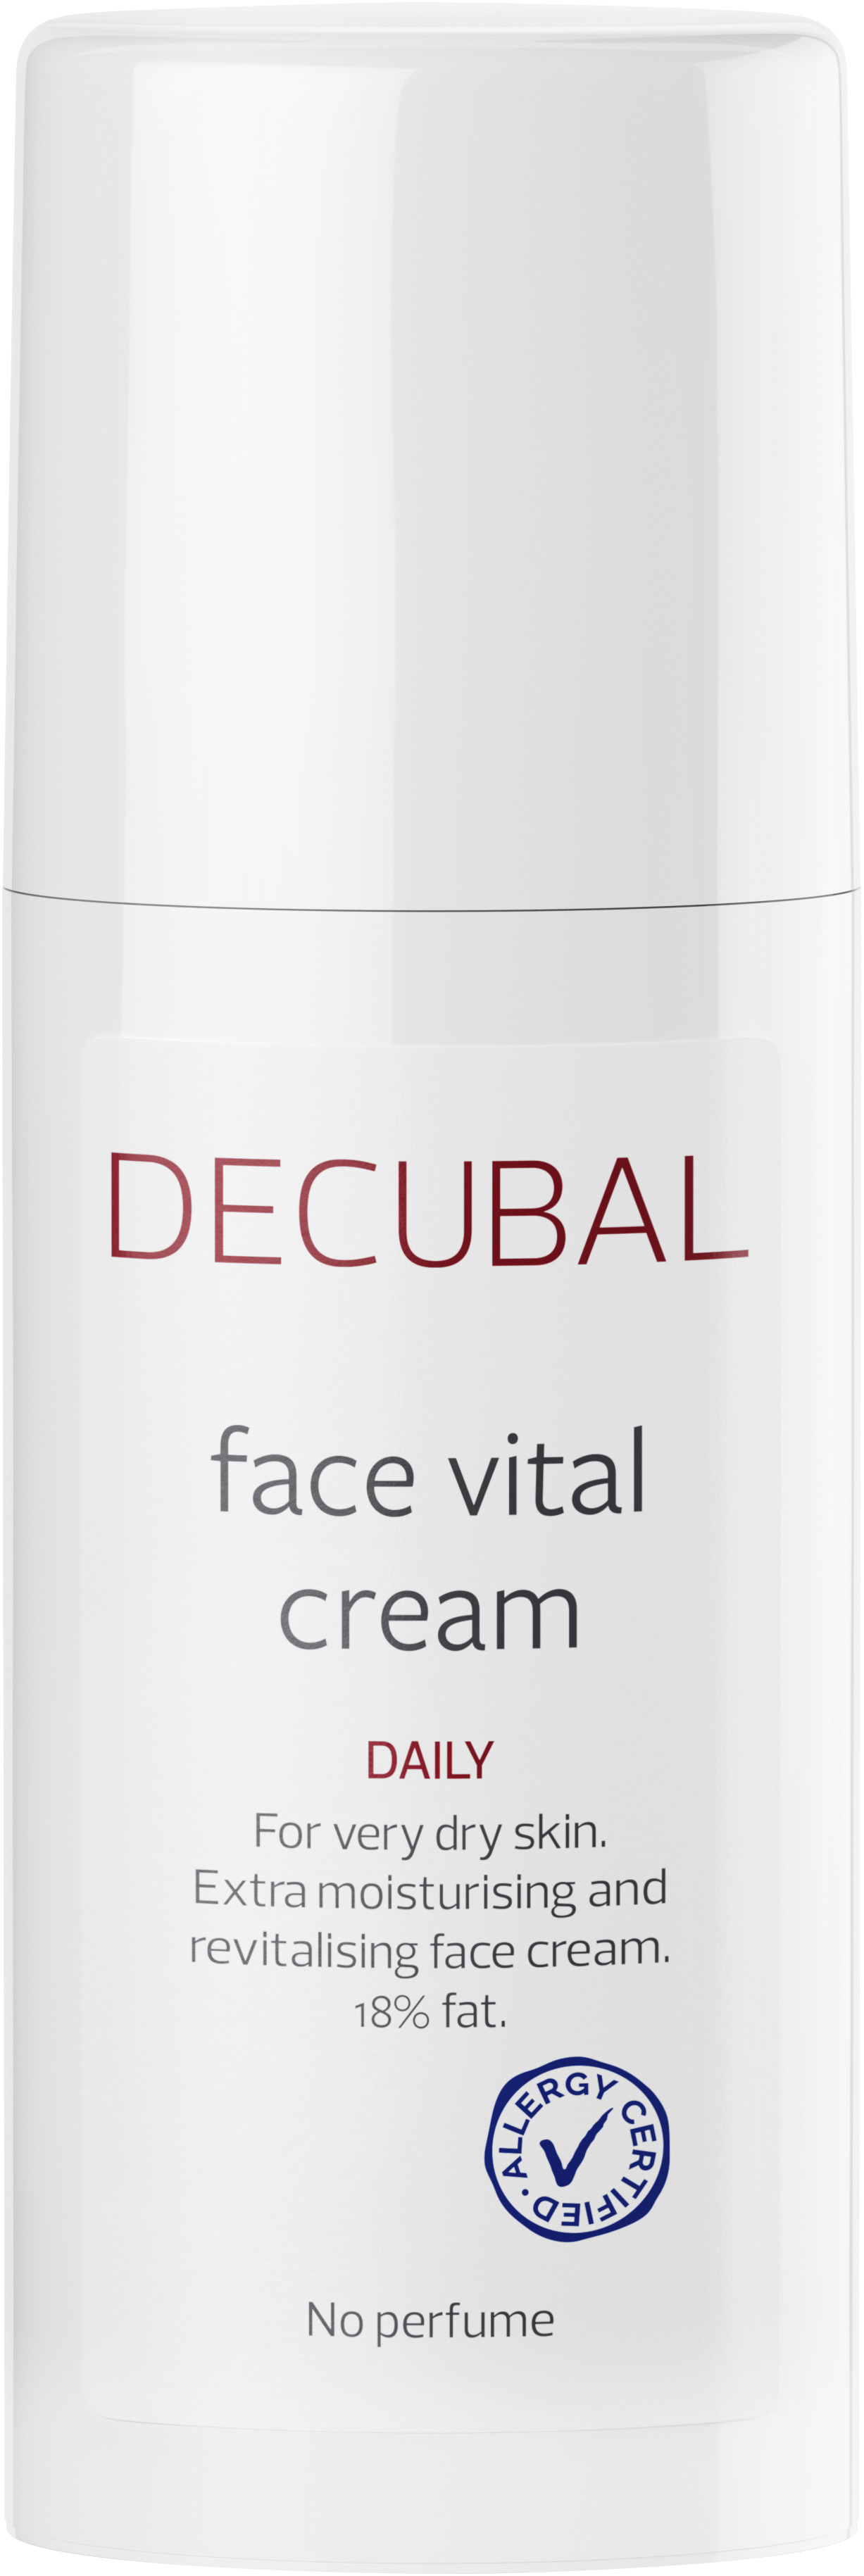 Decubal Face Vital Cream 50 ml